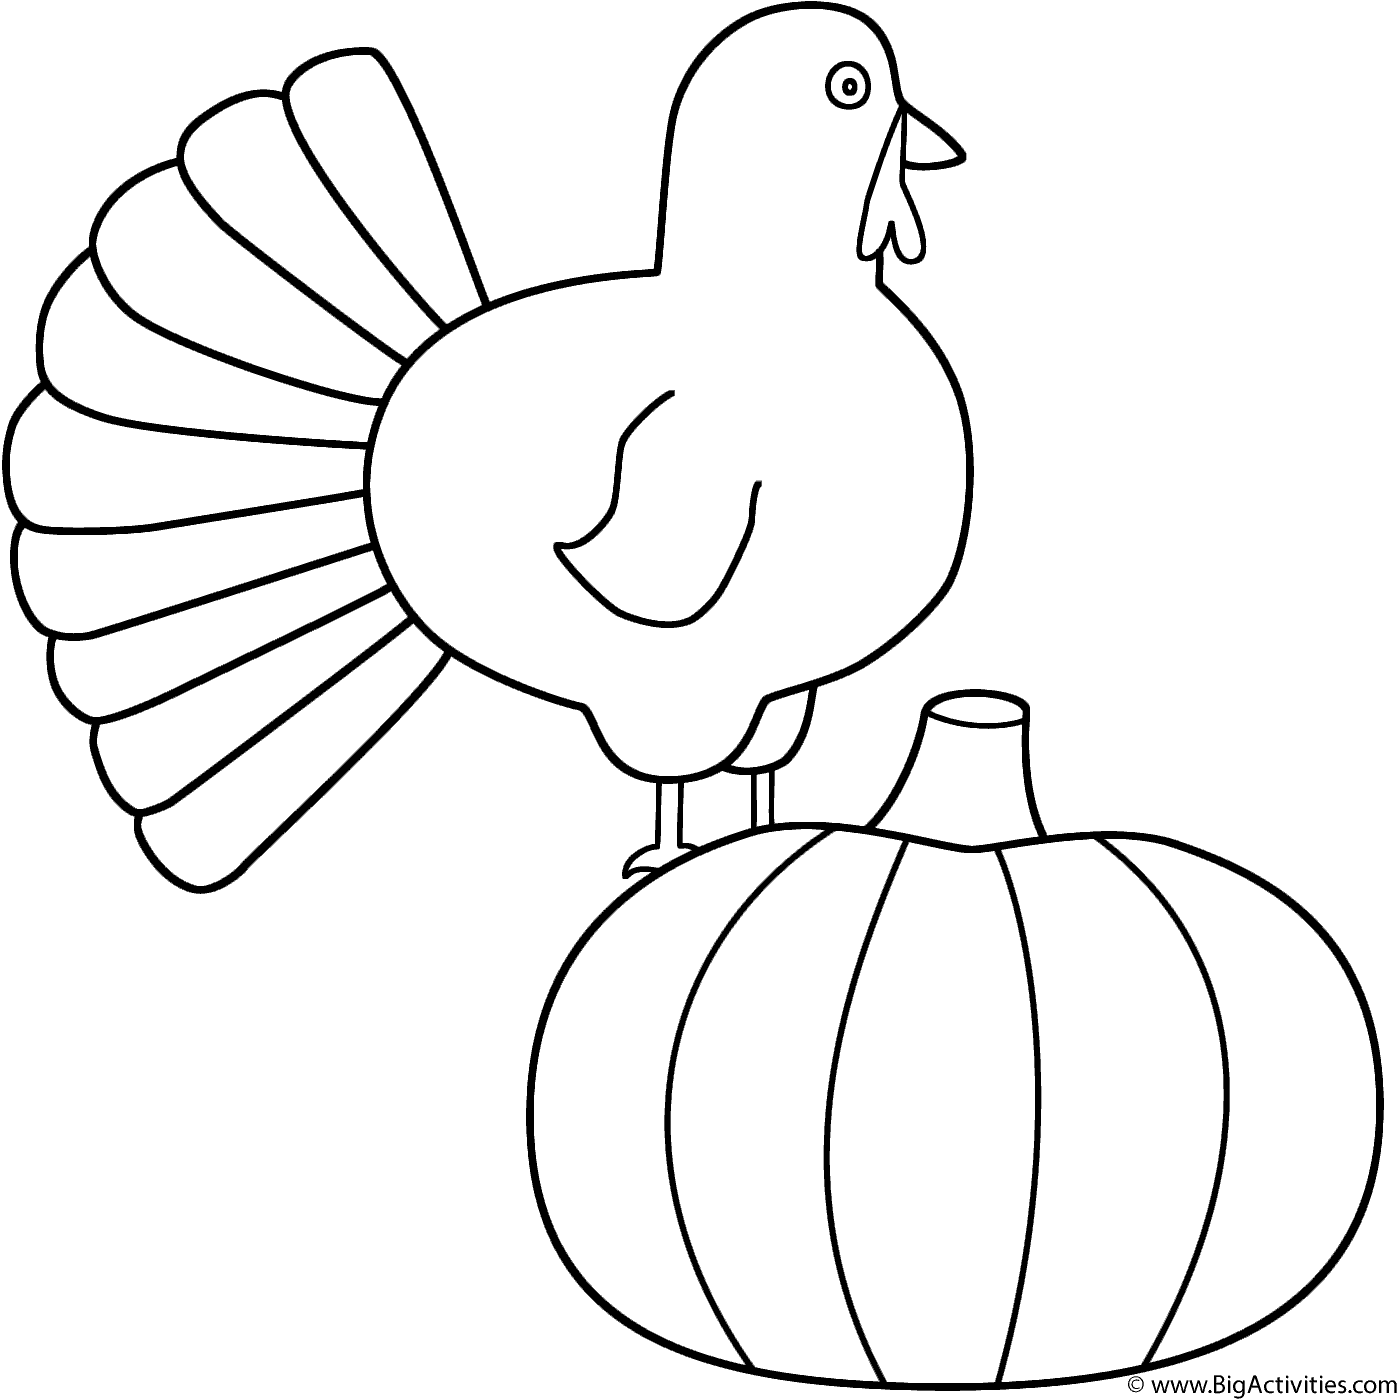 Turkey with pumpkin